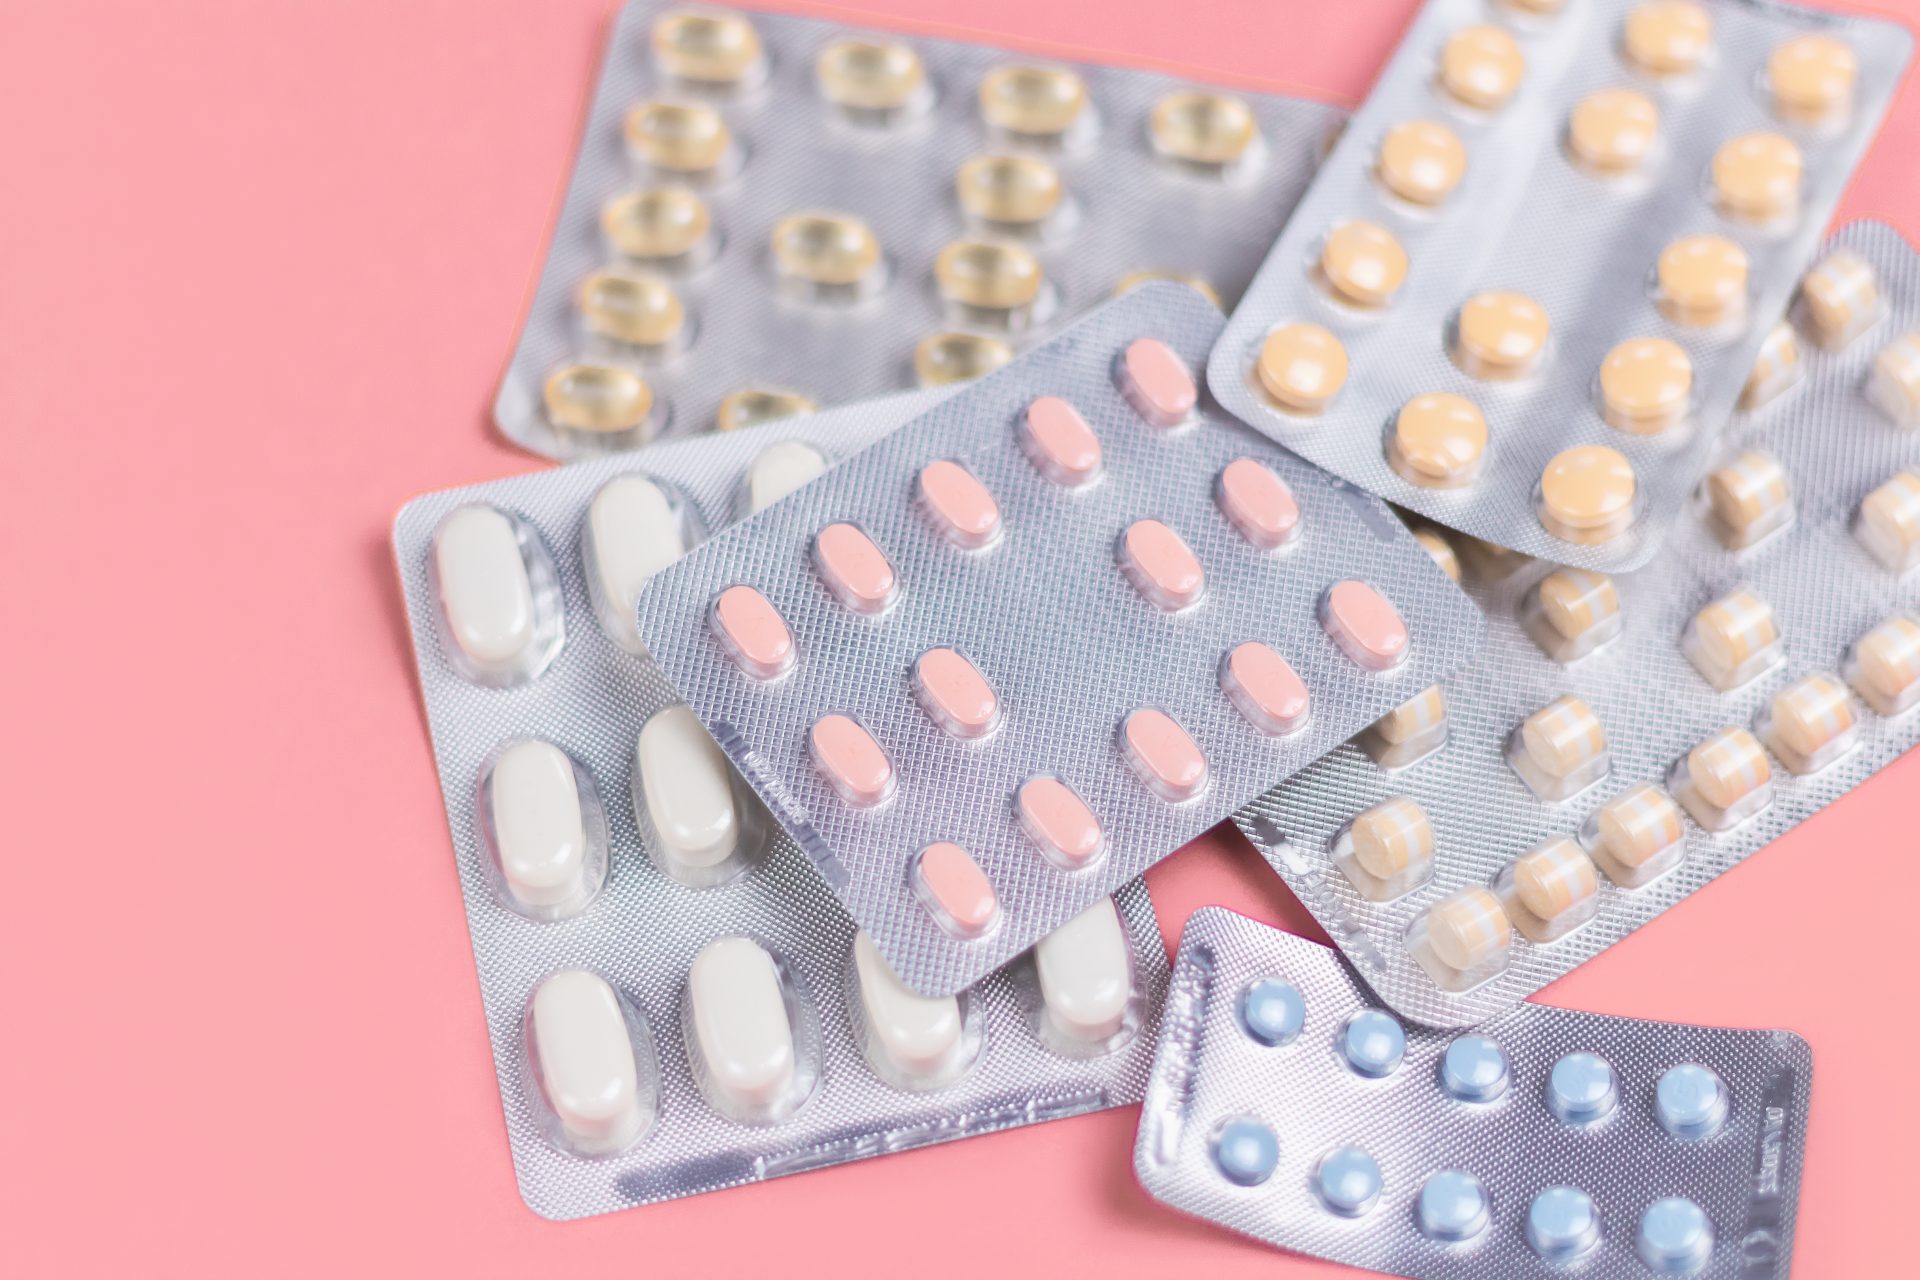 Consideraciones Importantes sobre los riesgos de las píldoras anticonceptivas